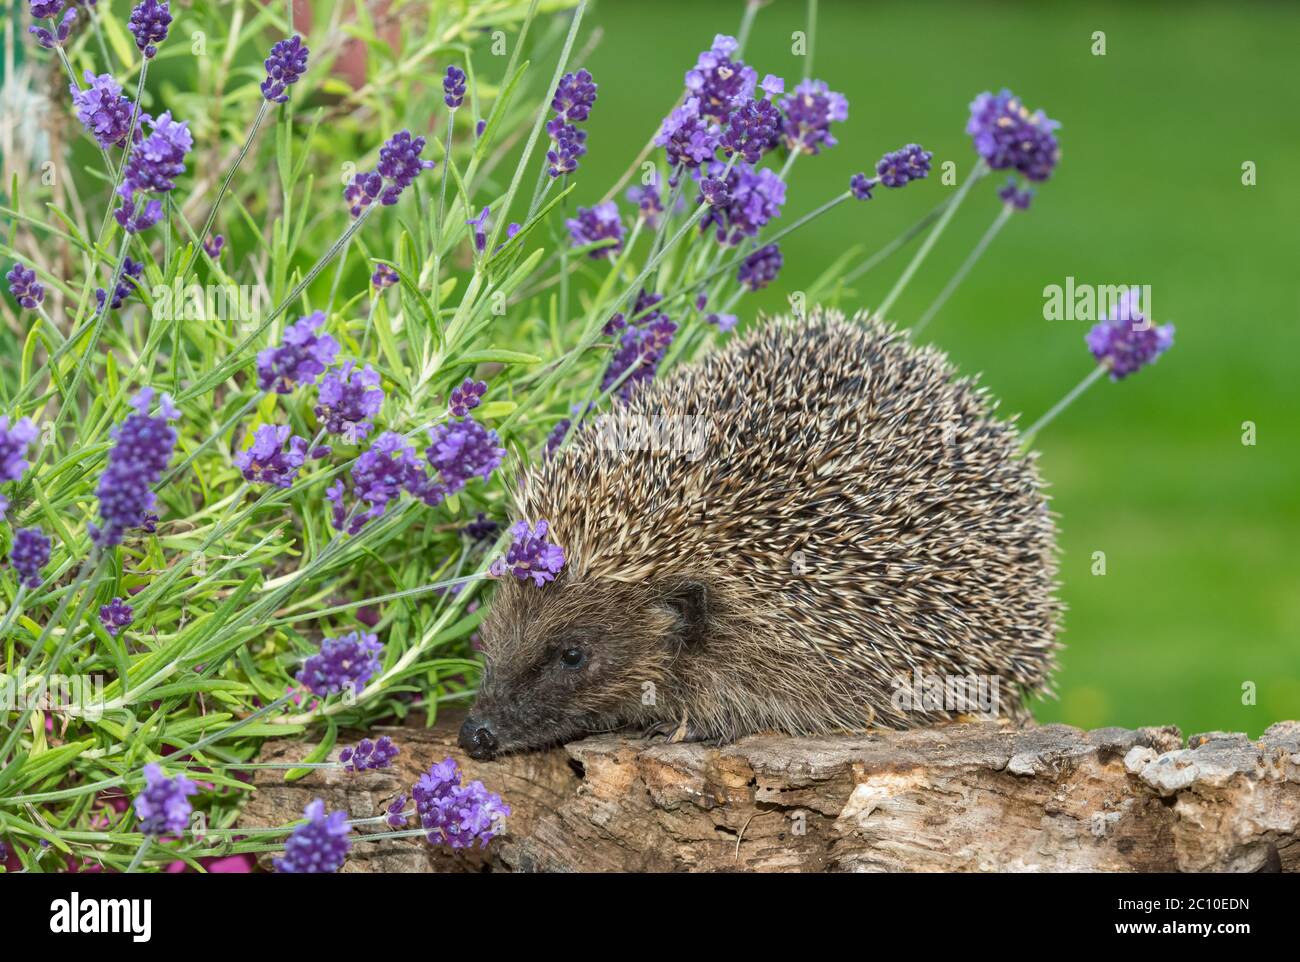 Hedgehog, (nome scientifico: Erinaceus Europaeus) riccio selvatico, nativo, europeo in habitat naturale del giardino con lavanda fiorente viola. Rivolto a sinistra Foto Stock